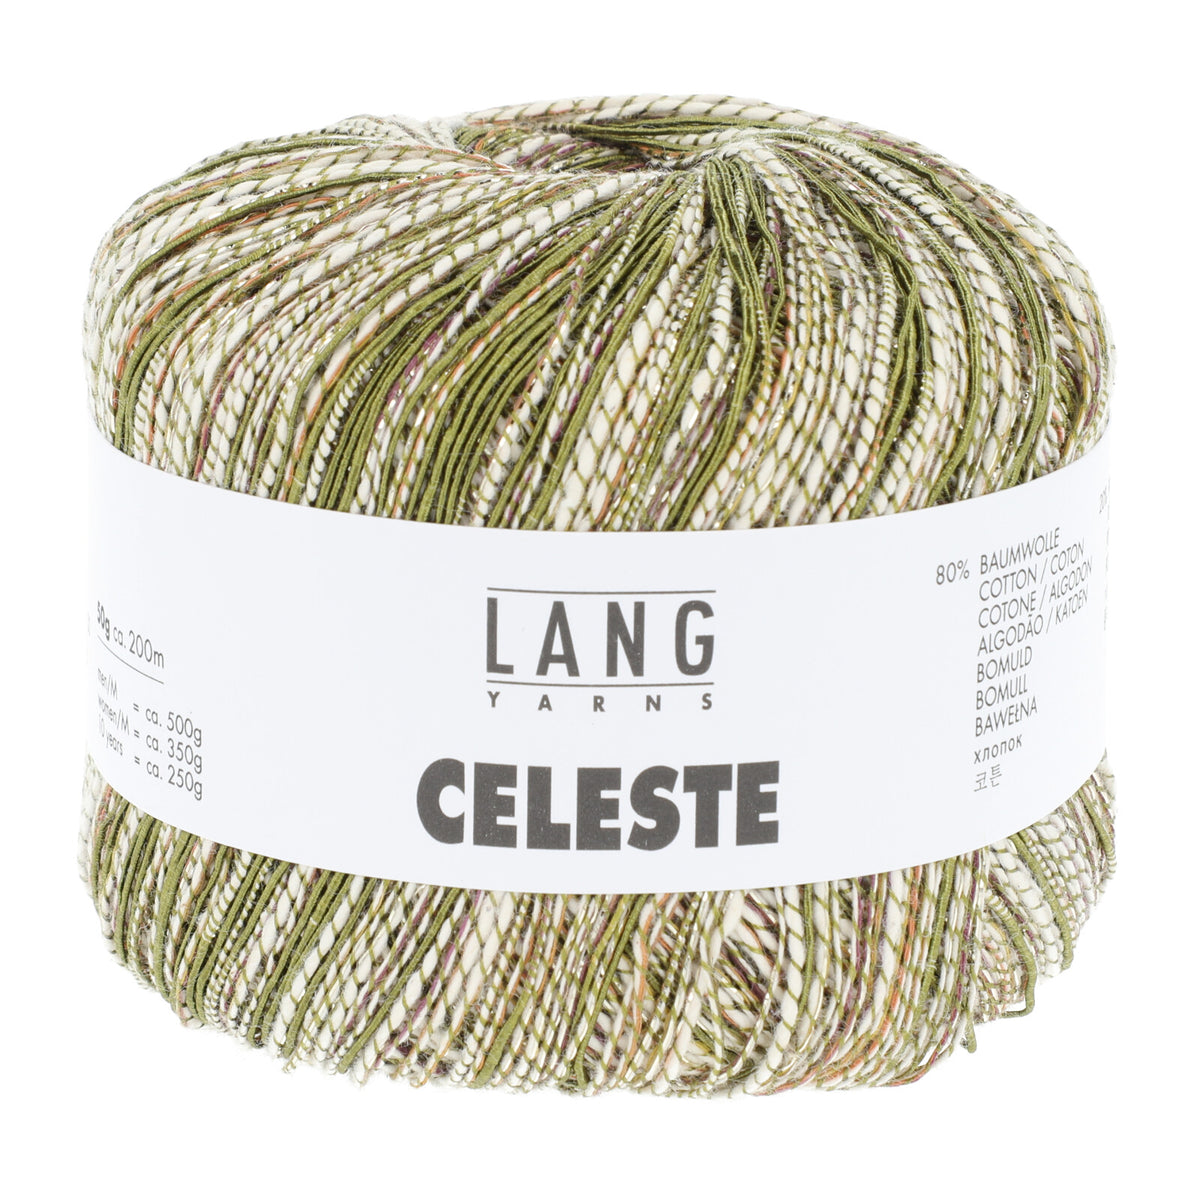 Lang Celeste